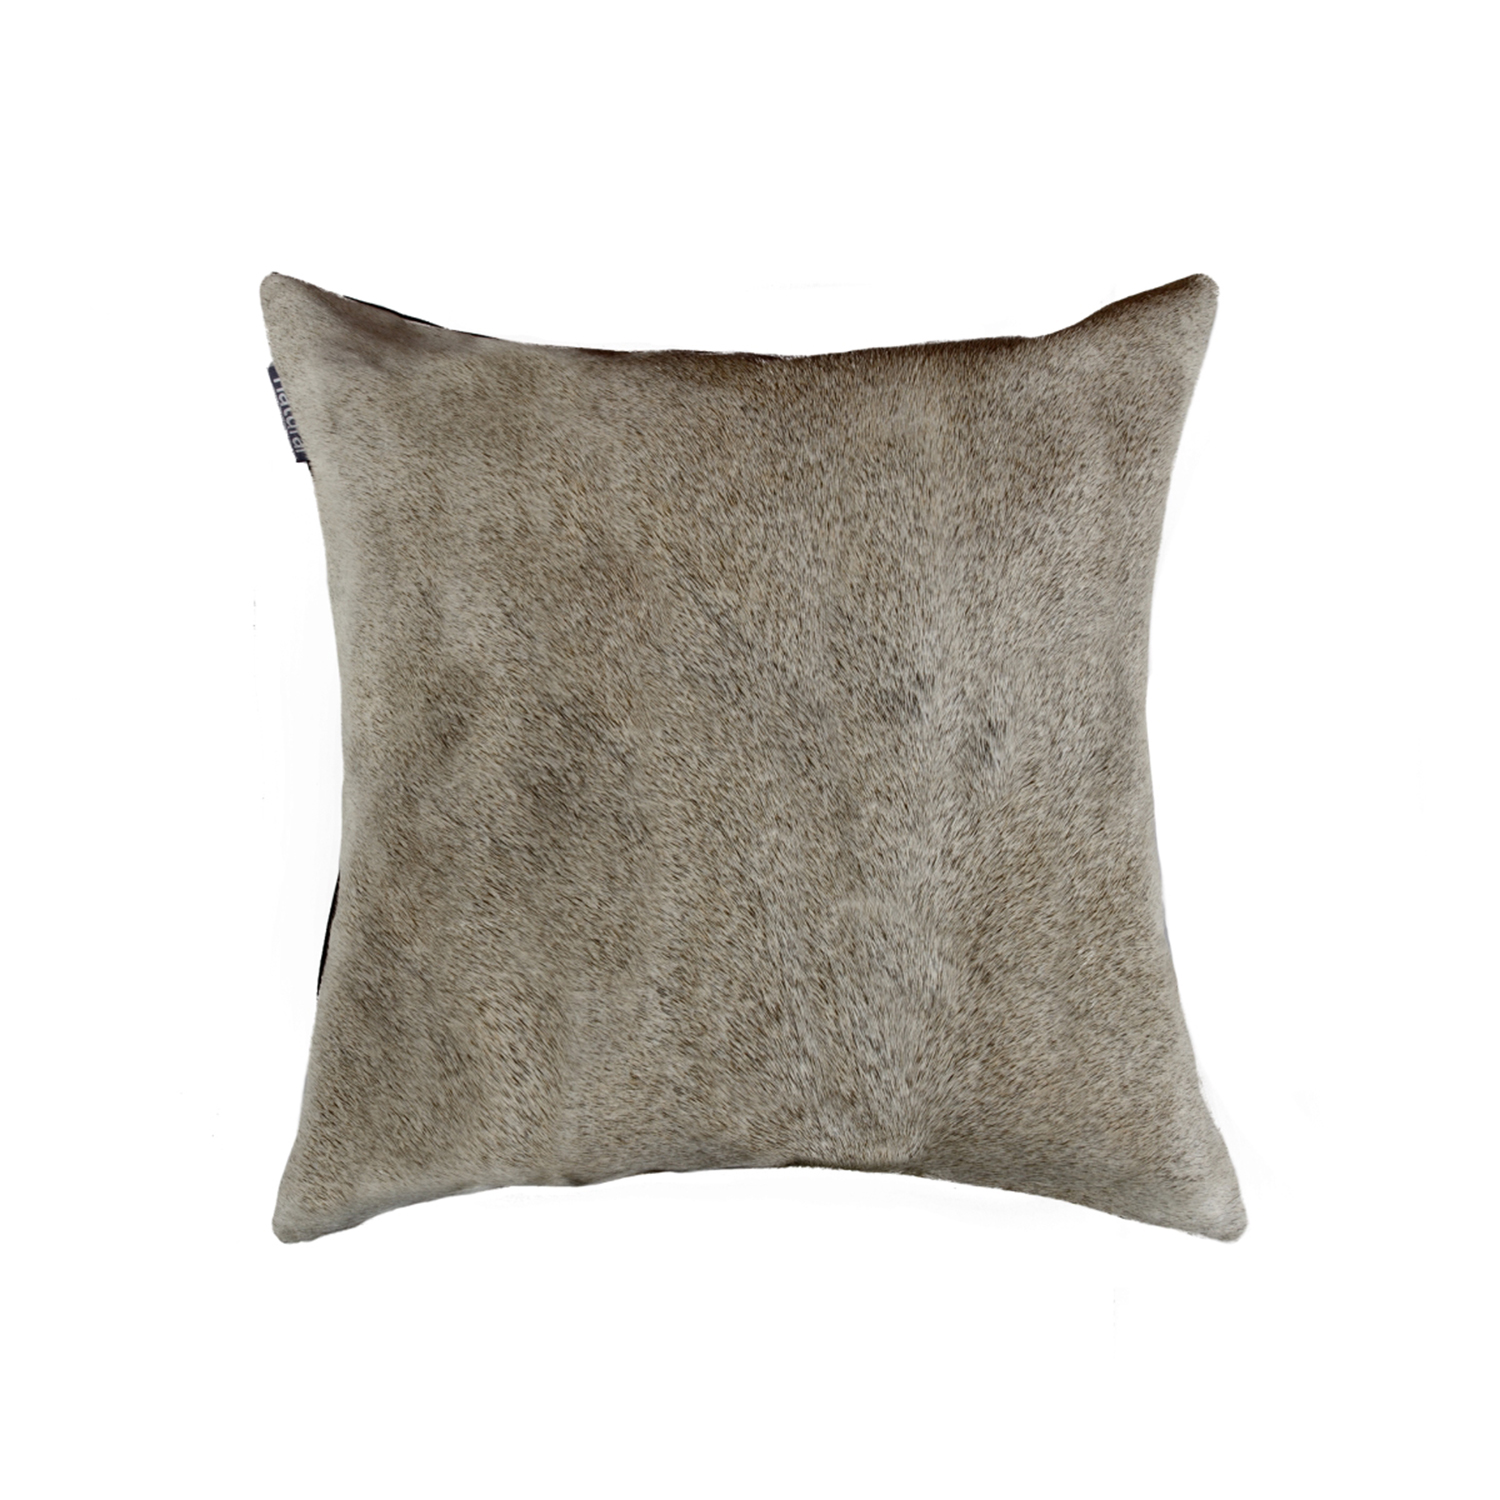 18" x 18" x 5" Gray Cowhide - Pillow